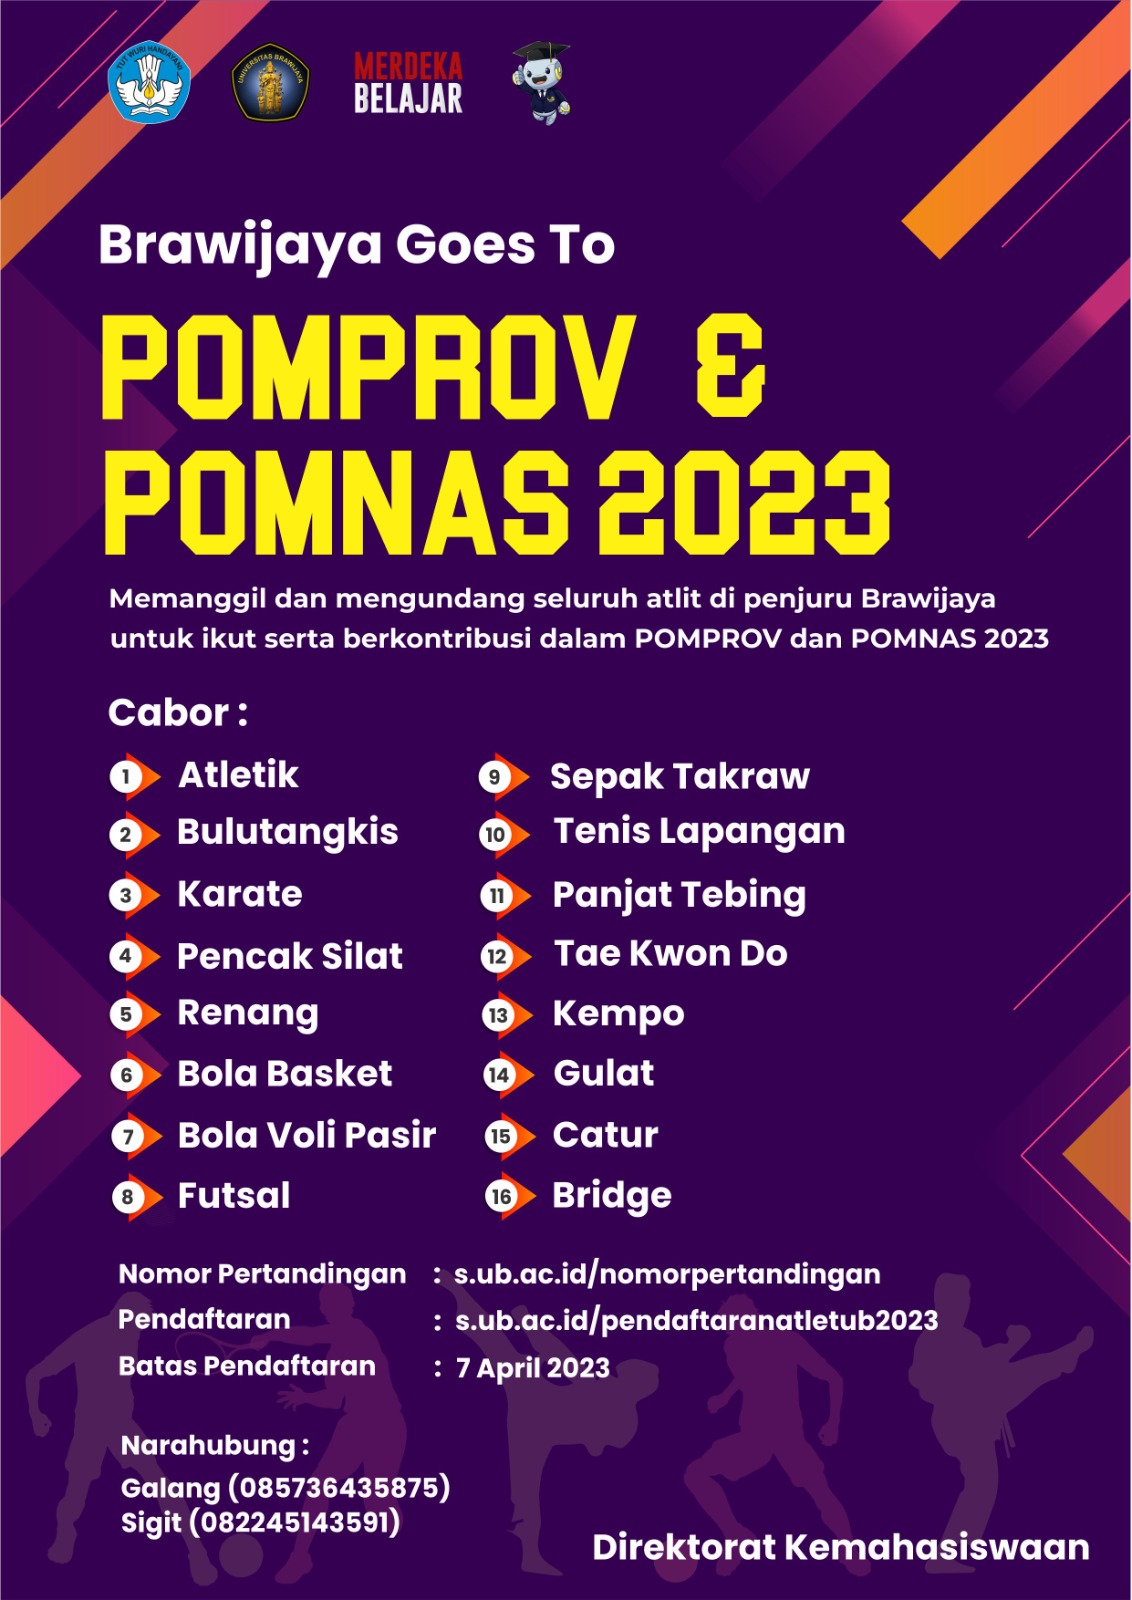 Brawijaya Goes to POMPROV & POMNAS 2023